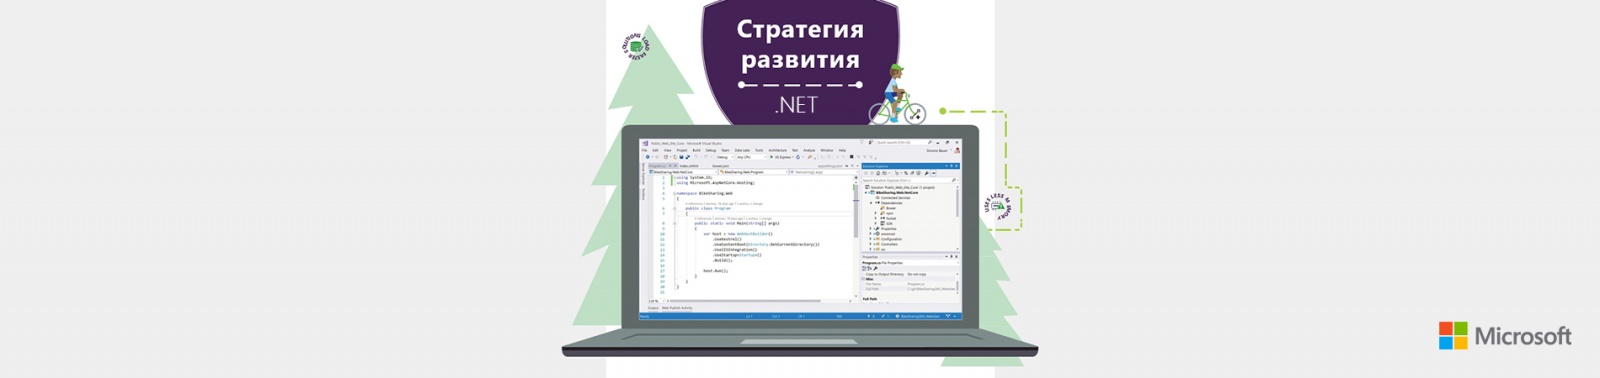 Стратегия развития языков программирования .NET - 1